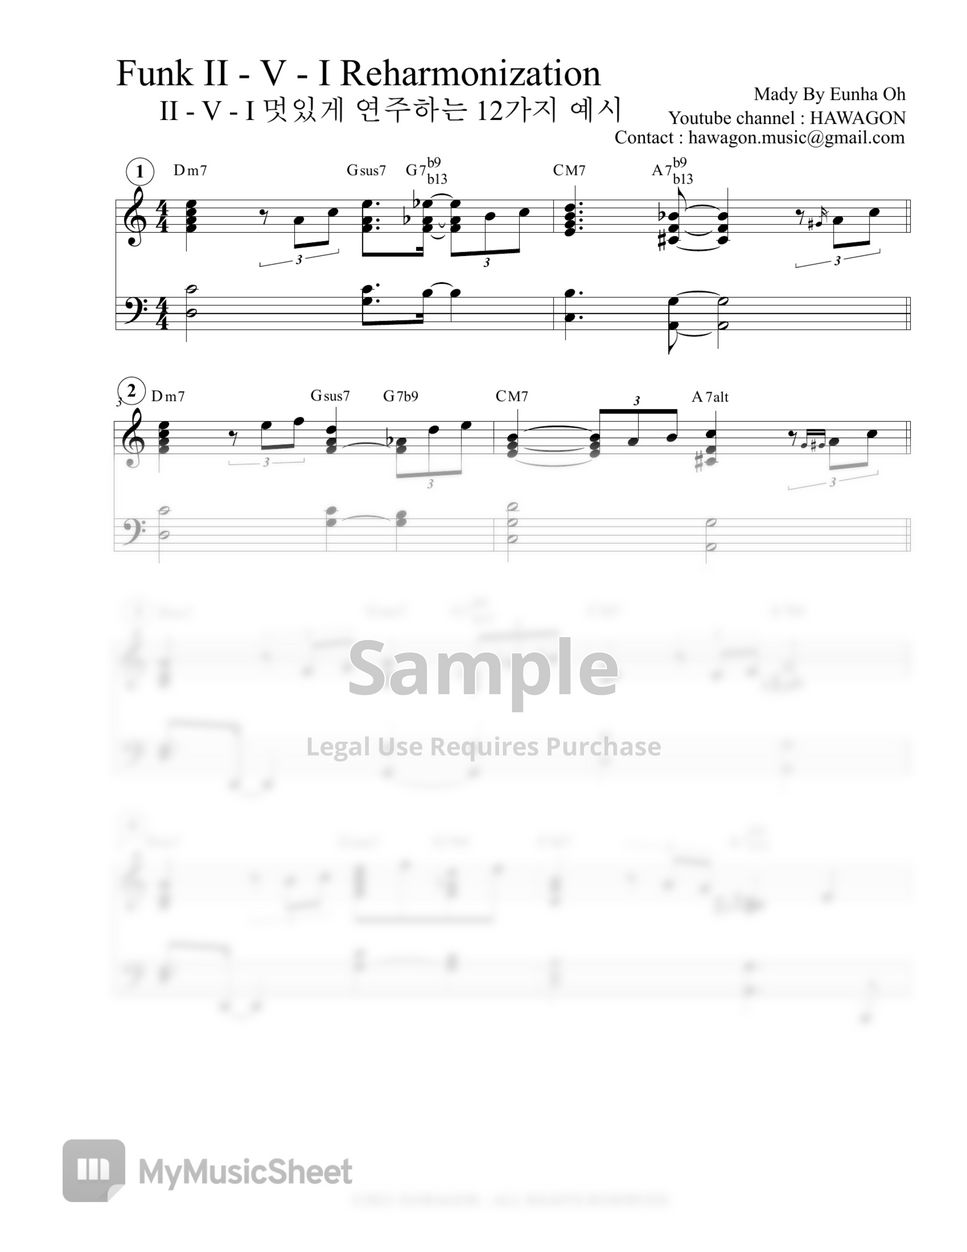 HAWAGON - 12 Ways To Play II-V-I voicing on Funk Rhythm (Jazz Piano) by HAWAGON